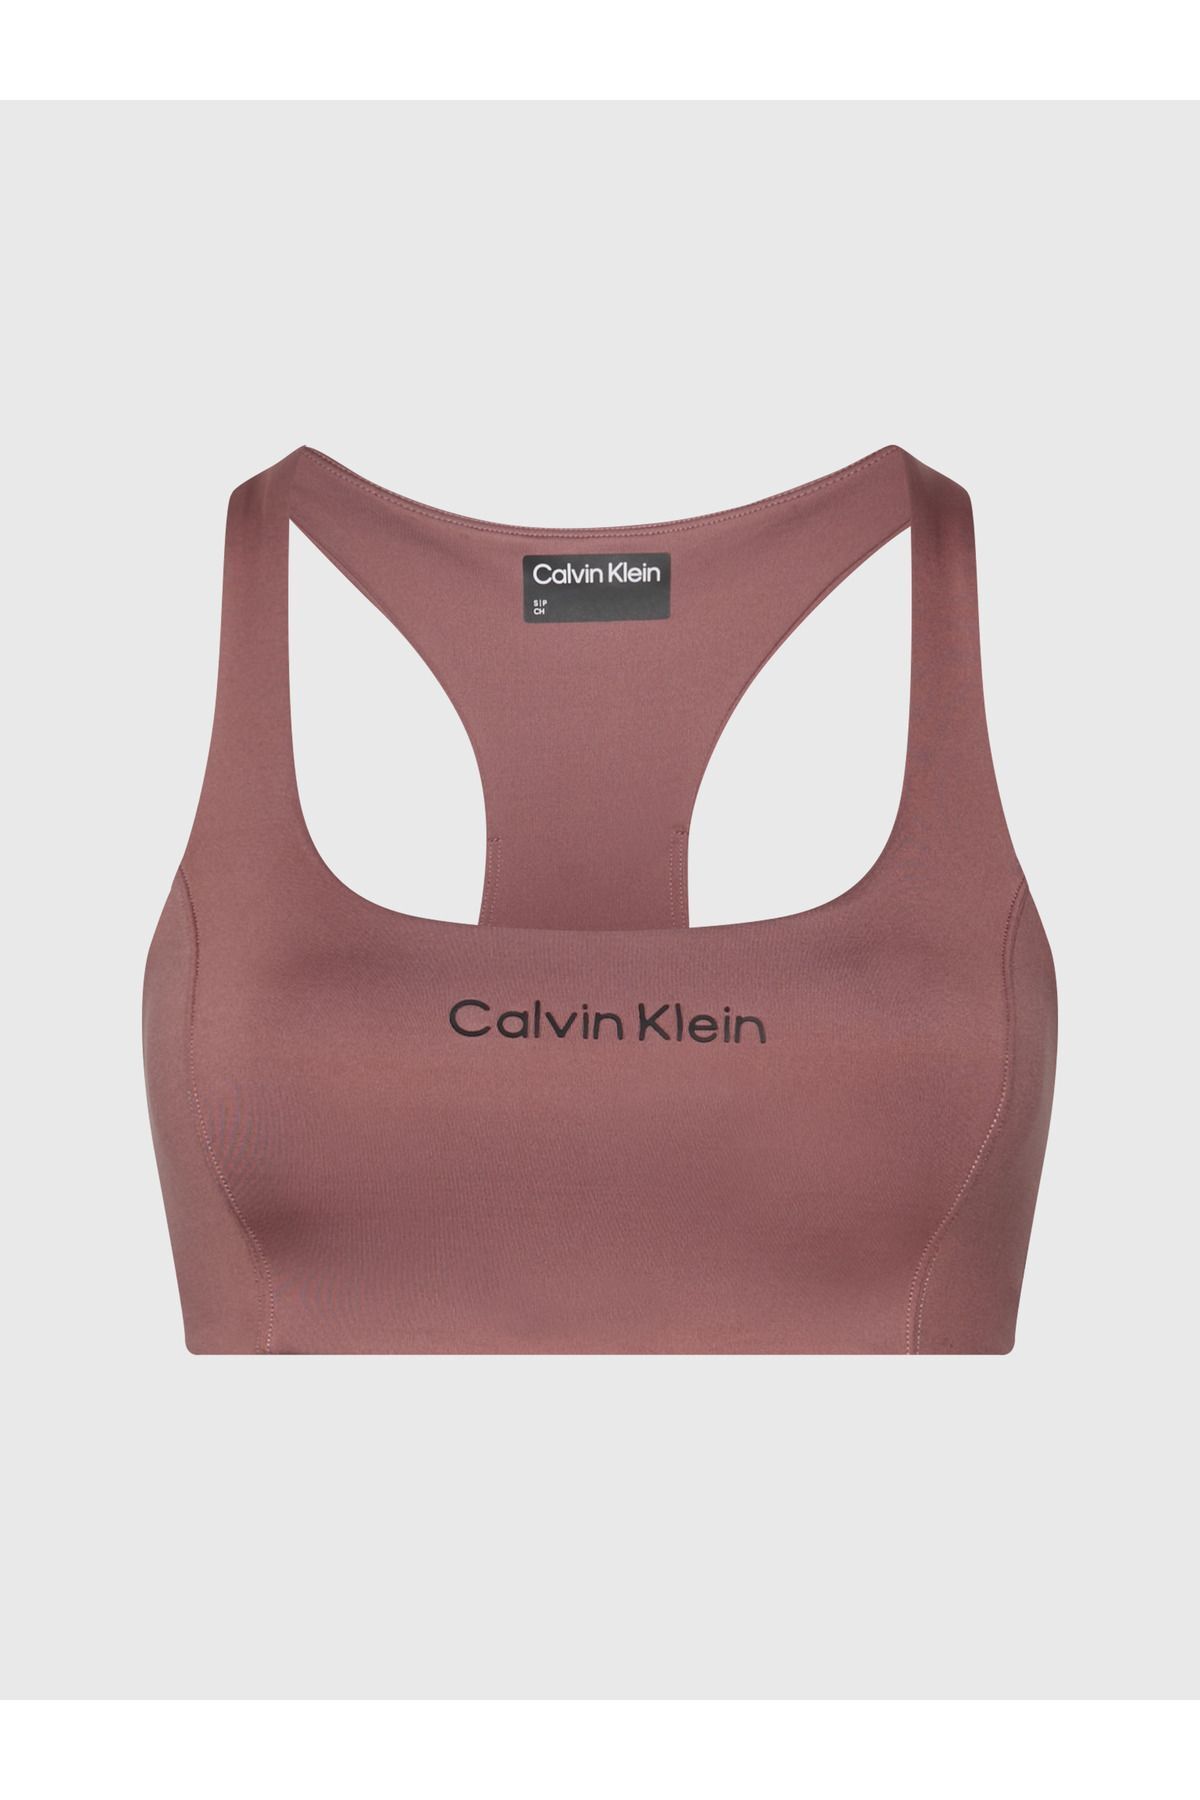 Calvin Klein Kadın Marka Logolu Destekleyici İç Bantlı Astarlıı Dolgusuz Çift Örgülü Günlük Ve Spor Kullanımına U